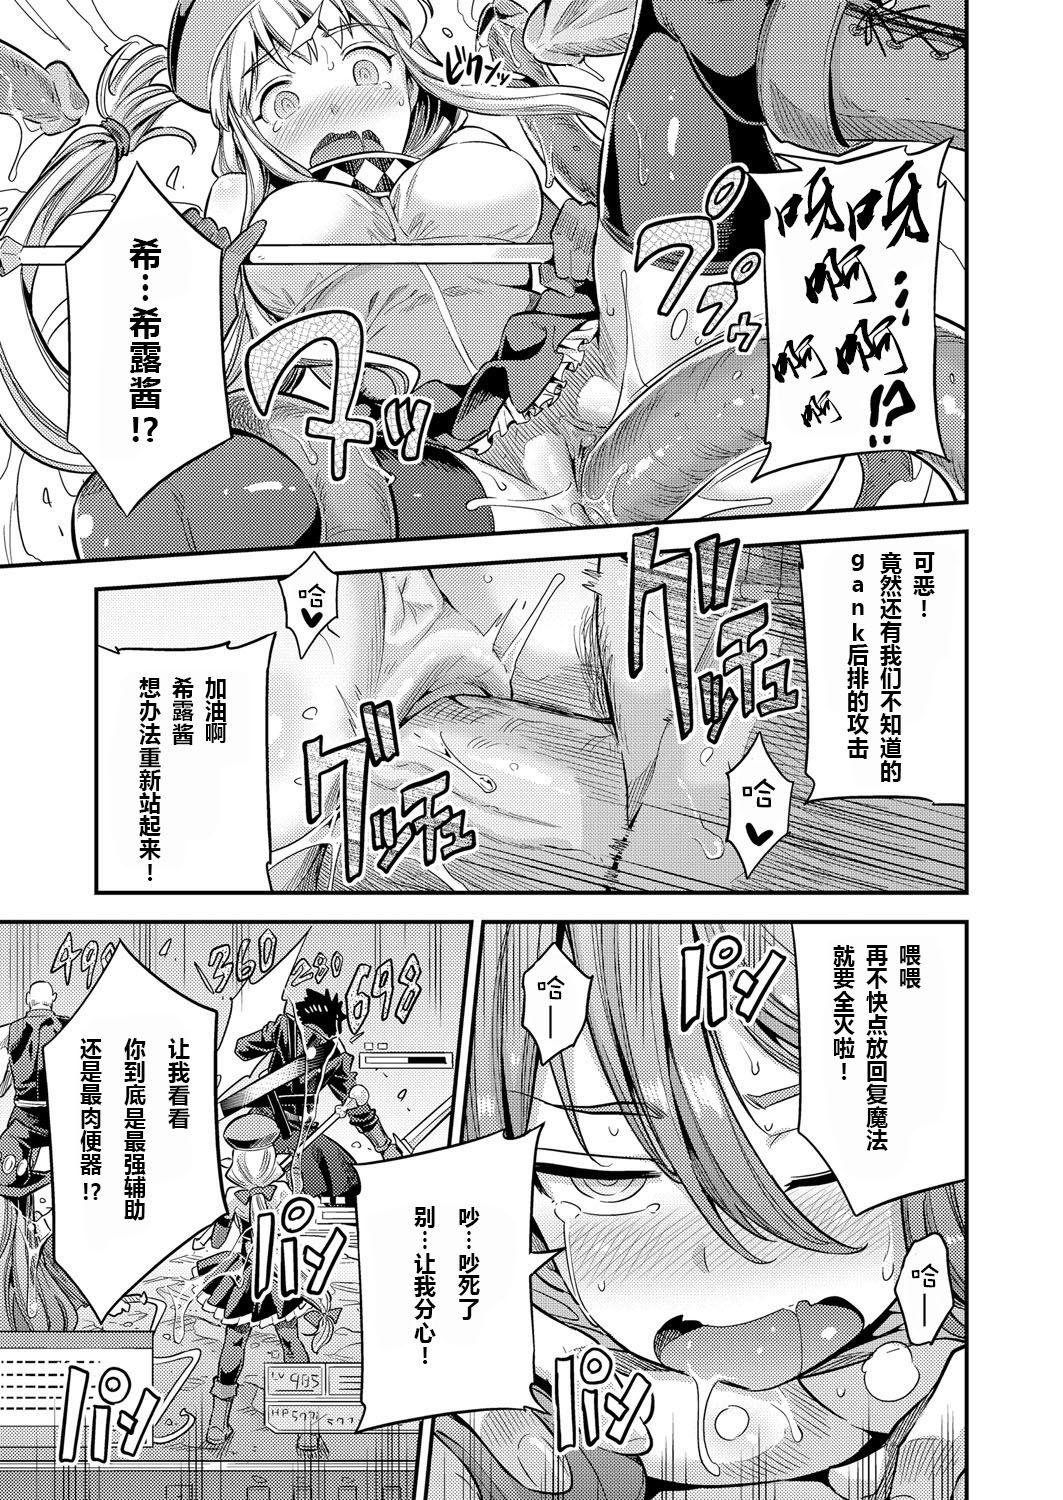 Arabe Watashi ga Ittara Mina Shinjau Netoge Haijin wa Tanetsuke Rape saretemo Te ga Hanasenain desu Caseiro - Page 11